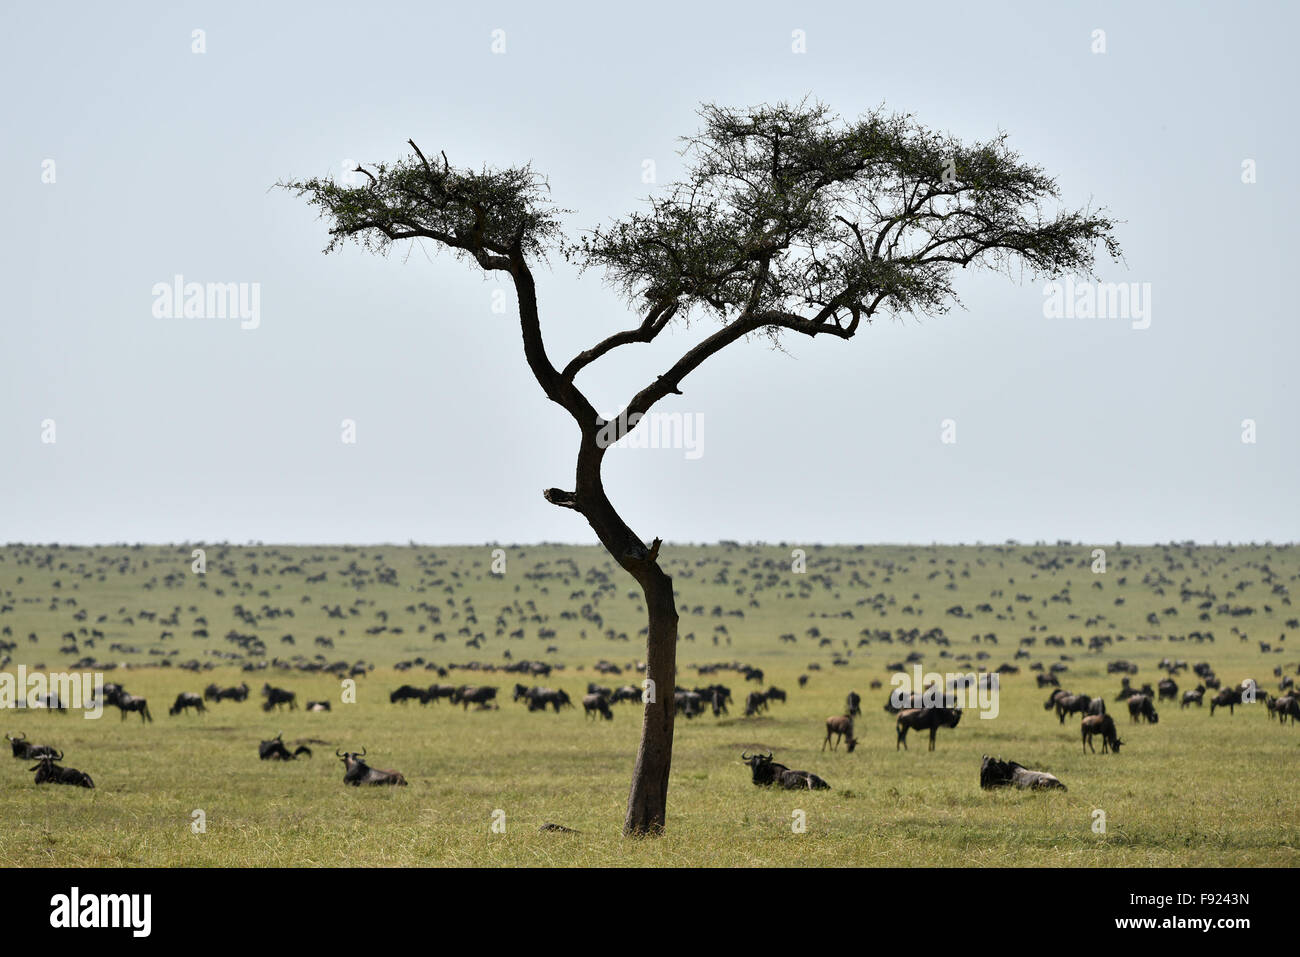 (151213) -- le Masai Mara, 13 déc 2015 (Xinhua) -- des gnous reste sur la savane au Kenya Masai Mara National Reserve, le 16 août 2015. En tant que pays, le Kenya possède une vaste zone de terres consacrées à des habitats fauniques. Le tropical humide et sec a créé une vaste savane tropicale pour le Kenya et pour les animaux sauvages à faire frémir. En retour, la grande savane et la faune diversifiée conduit le pays d'une réputation mondiale. Seul dans le Masai Mara National Reserve, il y a environ 95 espèces de mammifères et 450 espèces d'oiseaux. Tous les cinq des "cinq grands" le gibier de l'Afrique, qui est le lion, léopard, Banque D'Images